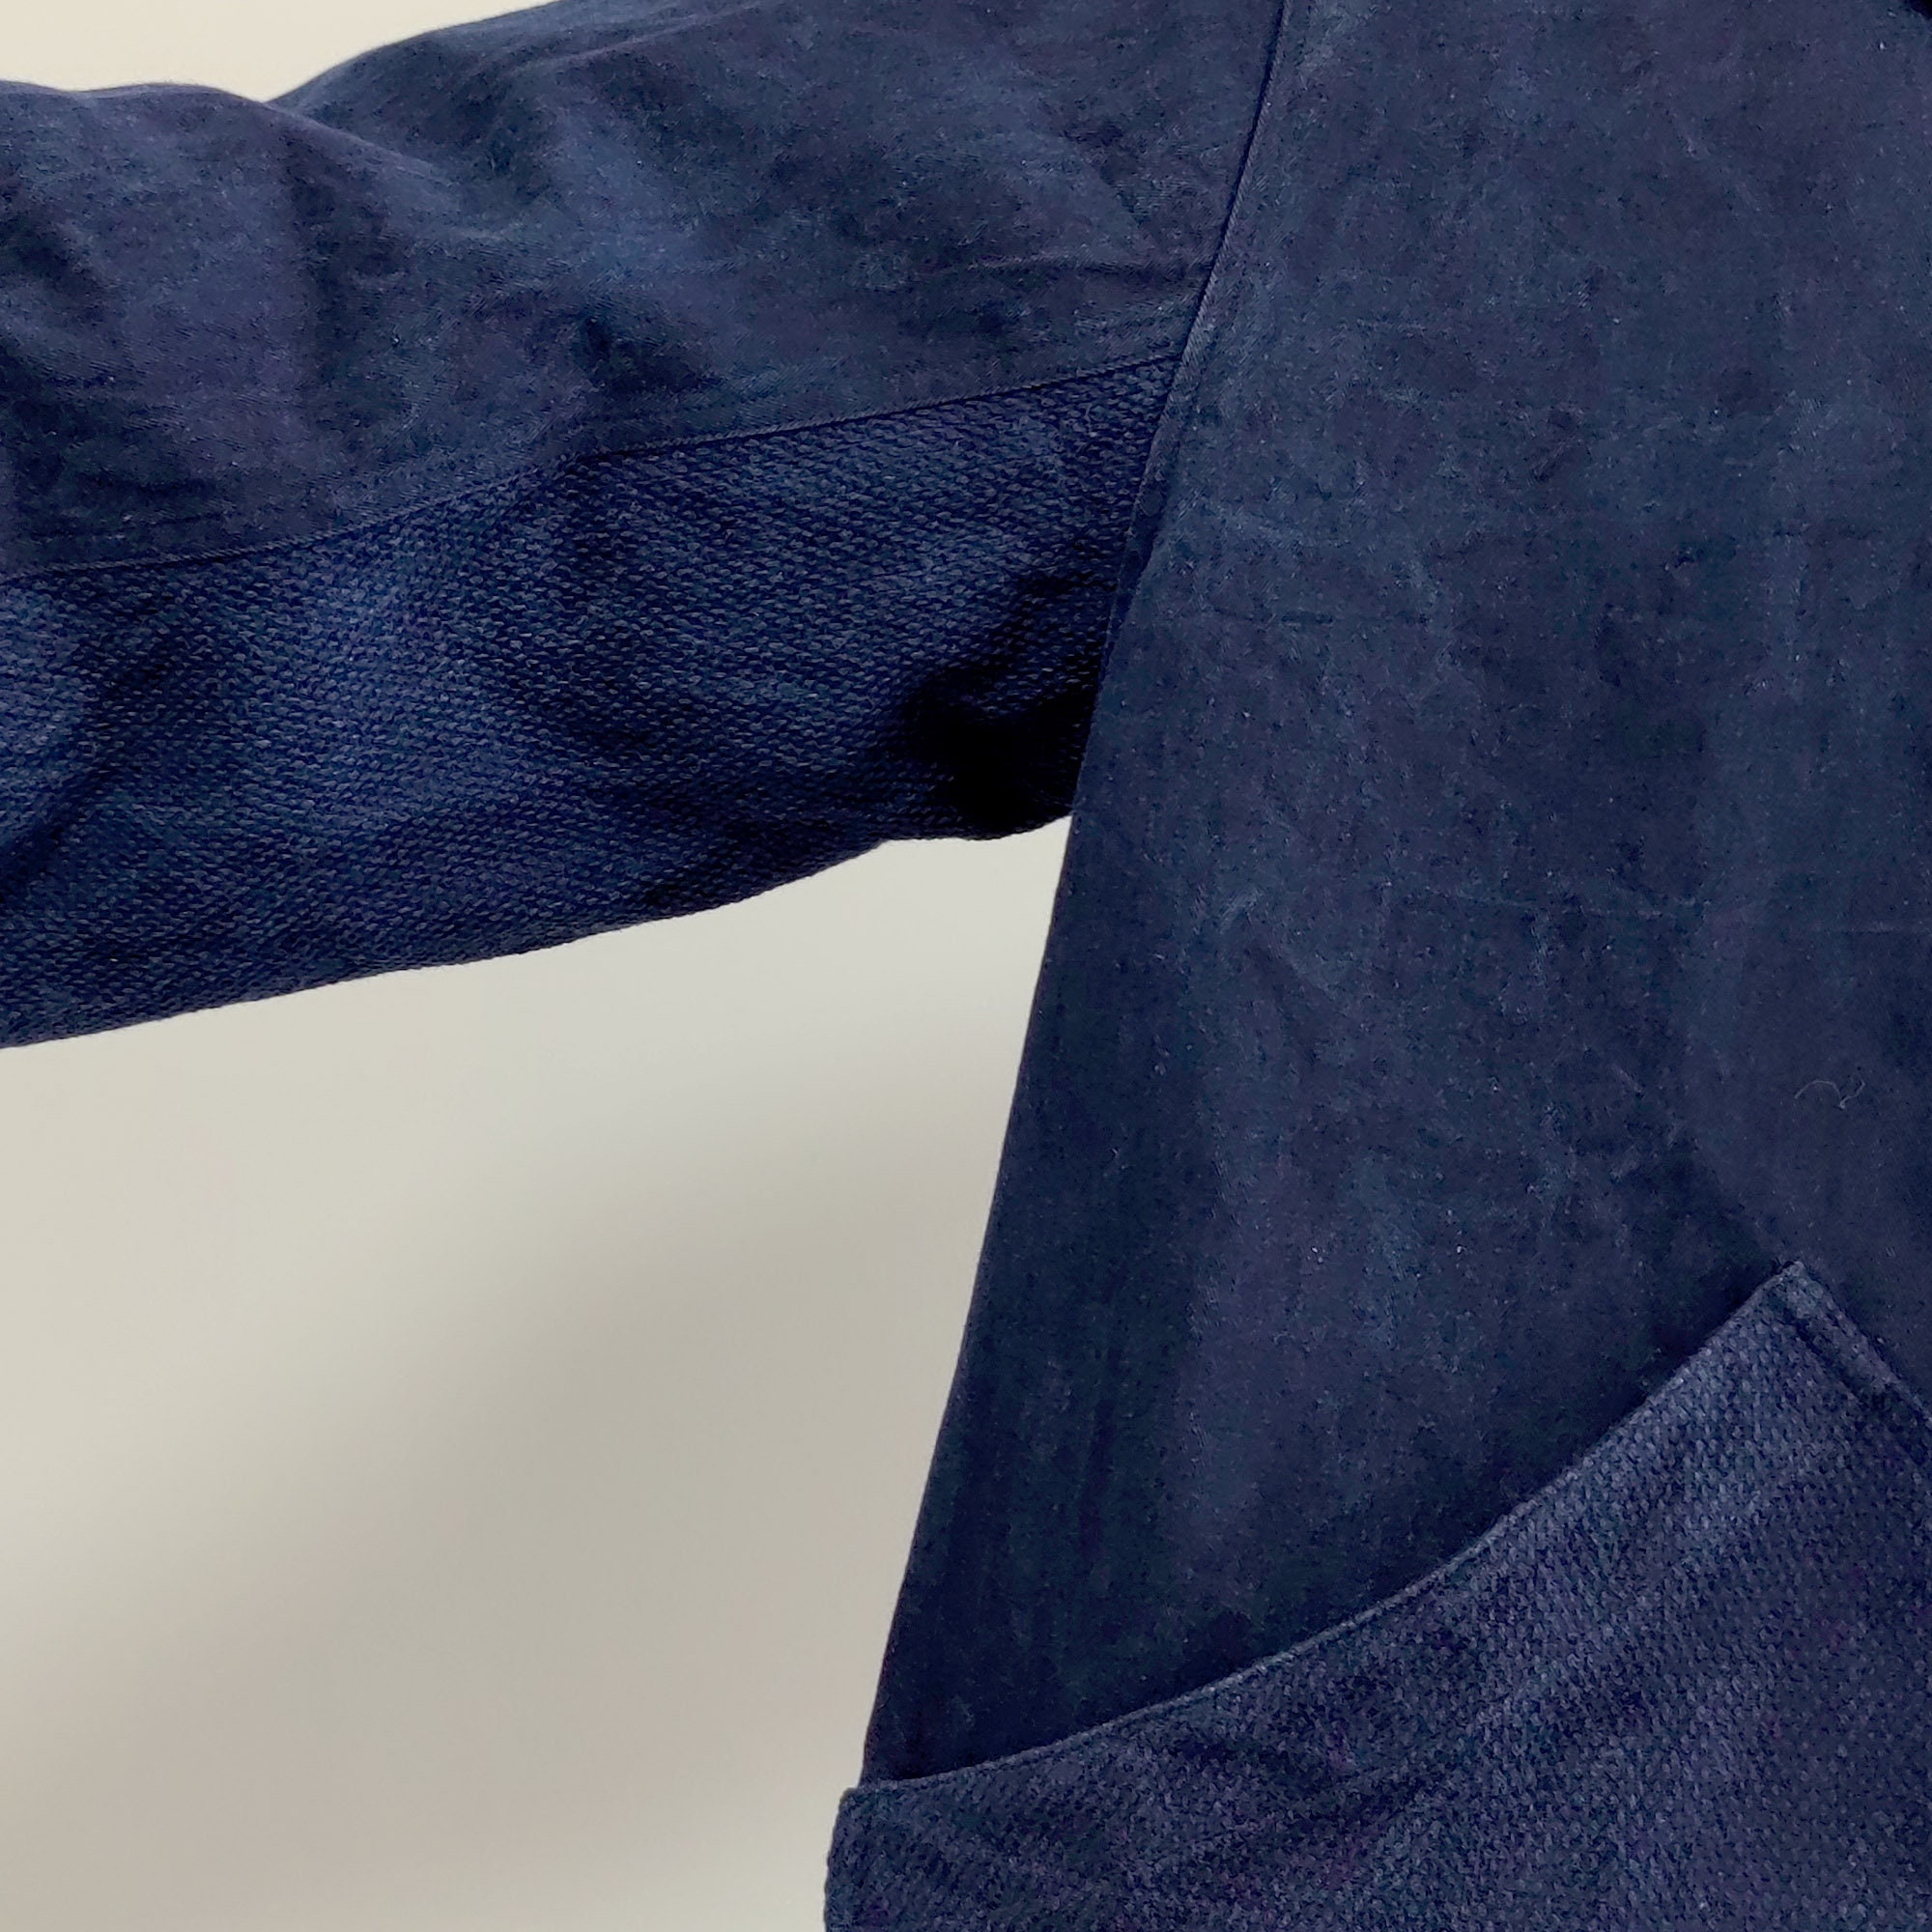 Indigo Blue Sashiko Jacket With Large Pockets Plant Dyed | Etsy